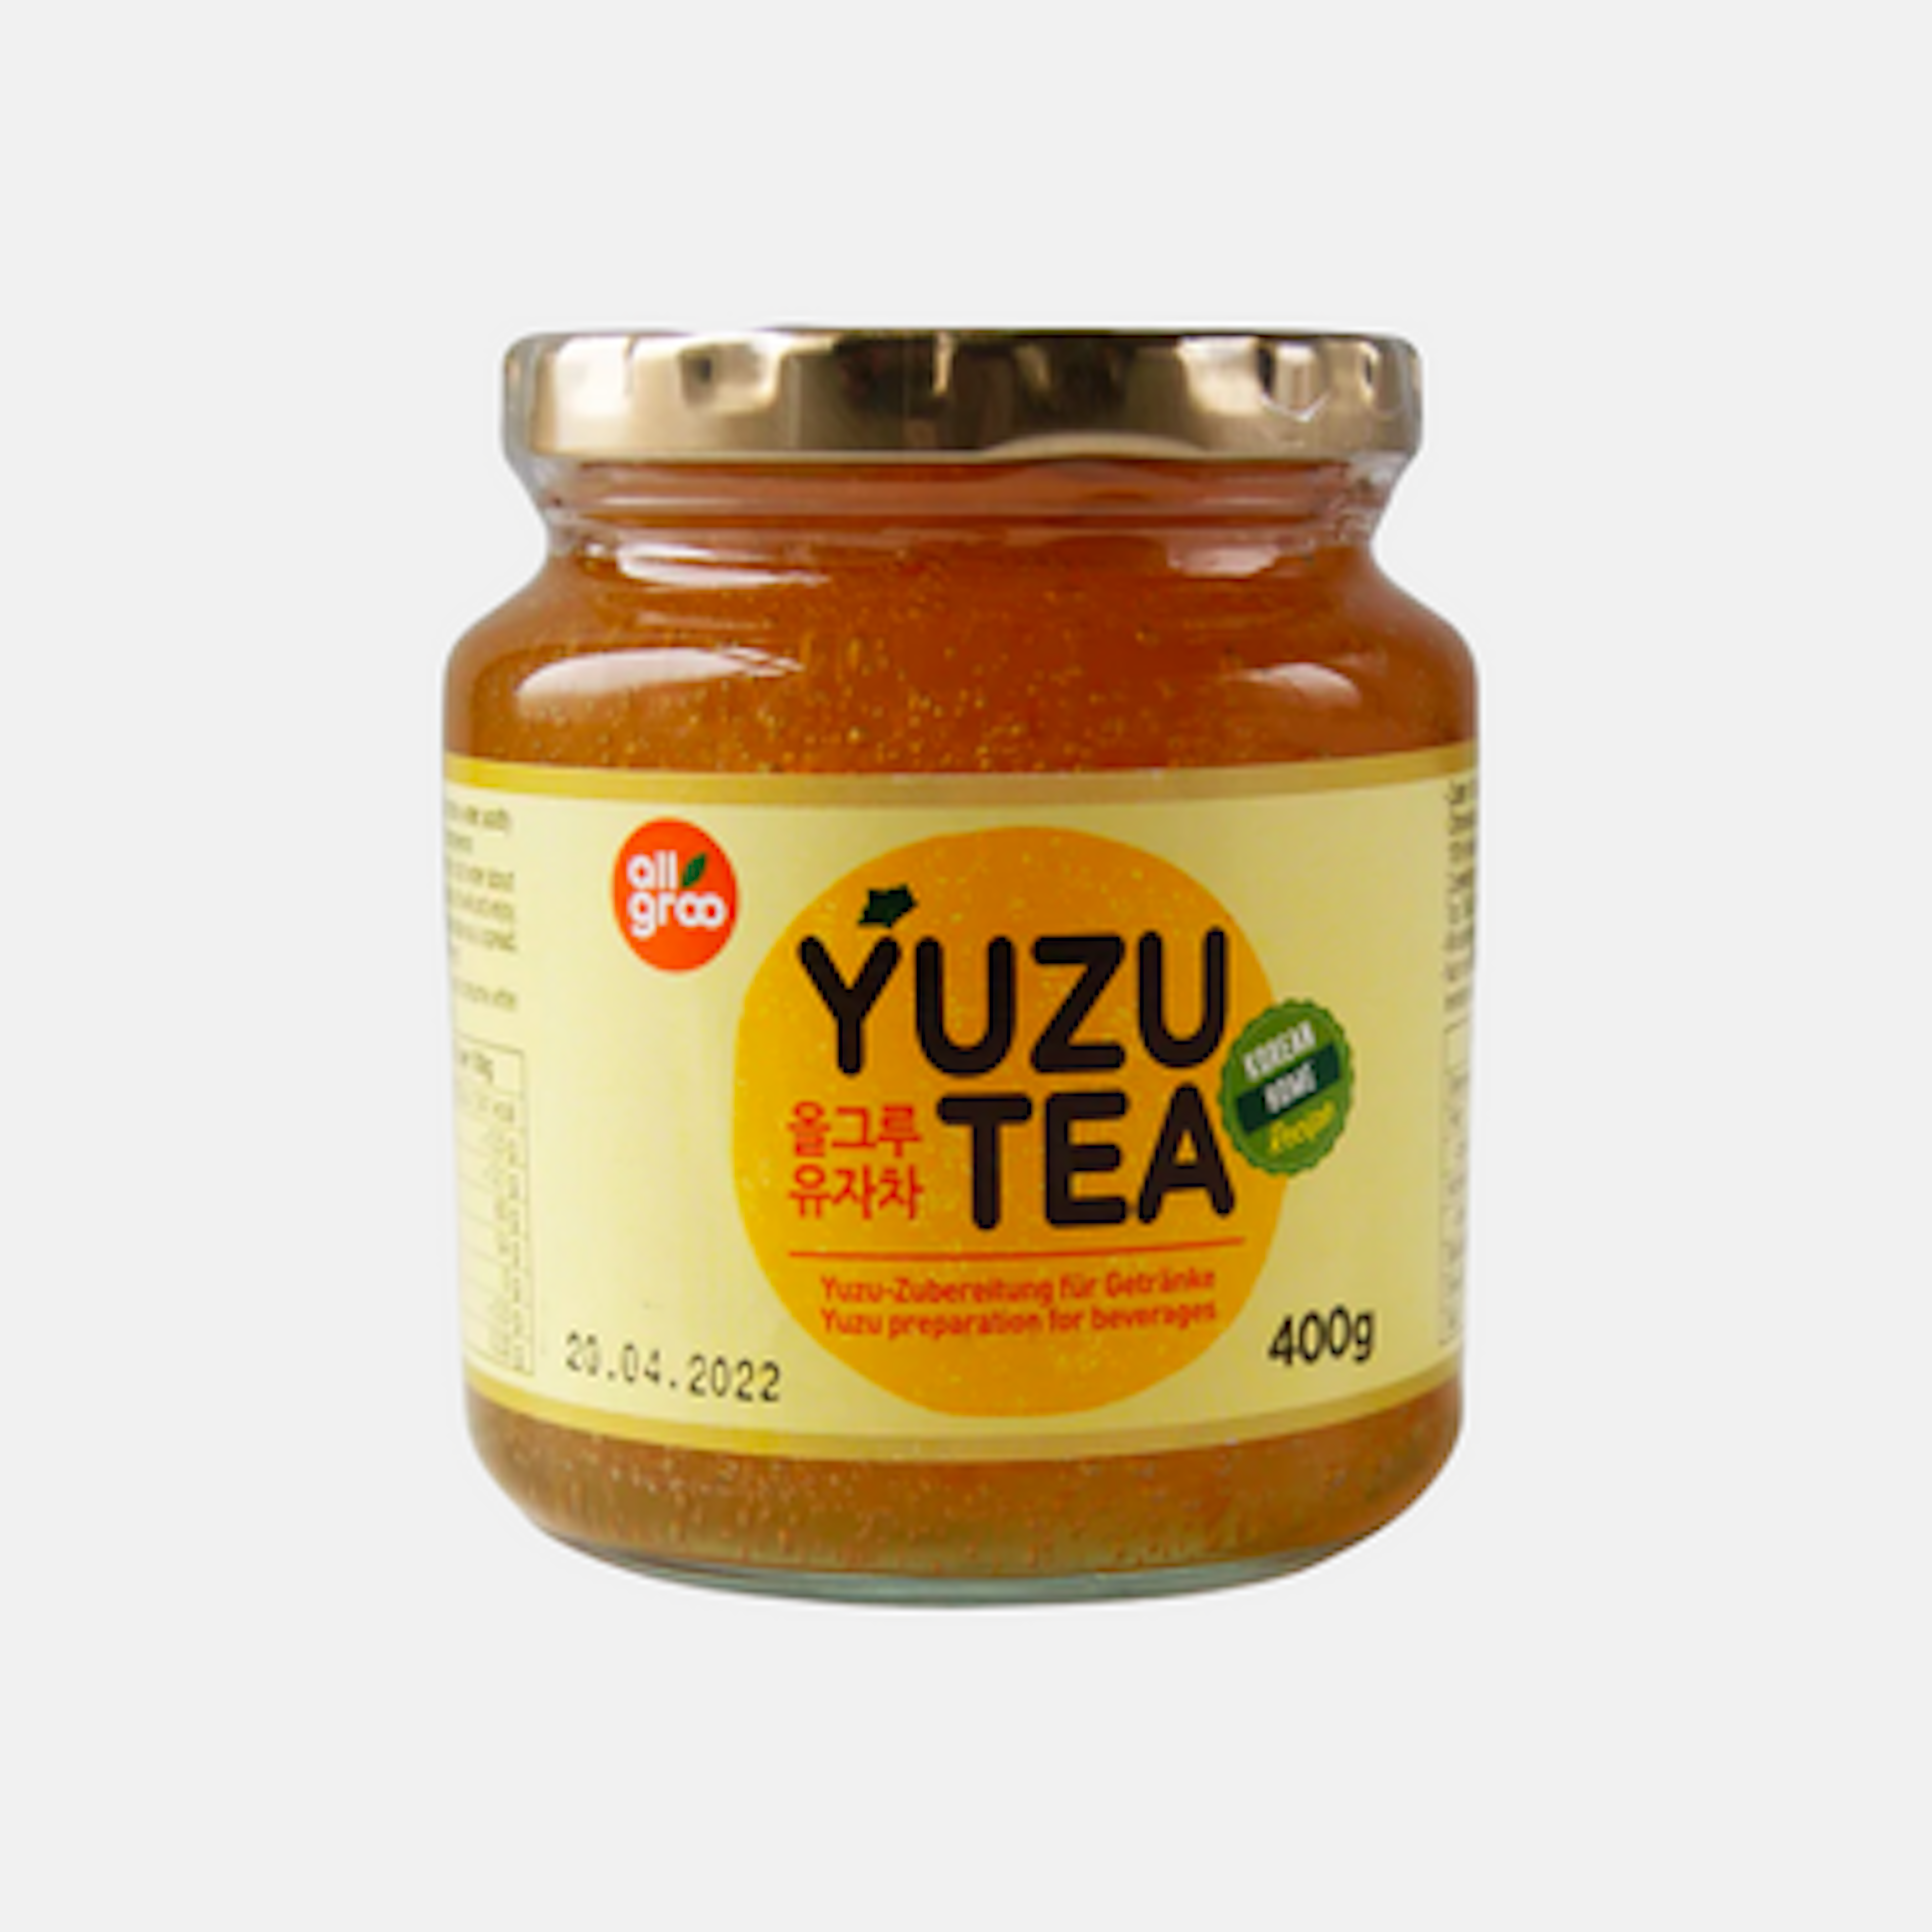 Yuza Tea, Yuja Tea, Yuza Tee, Yuja Tee